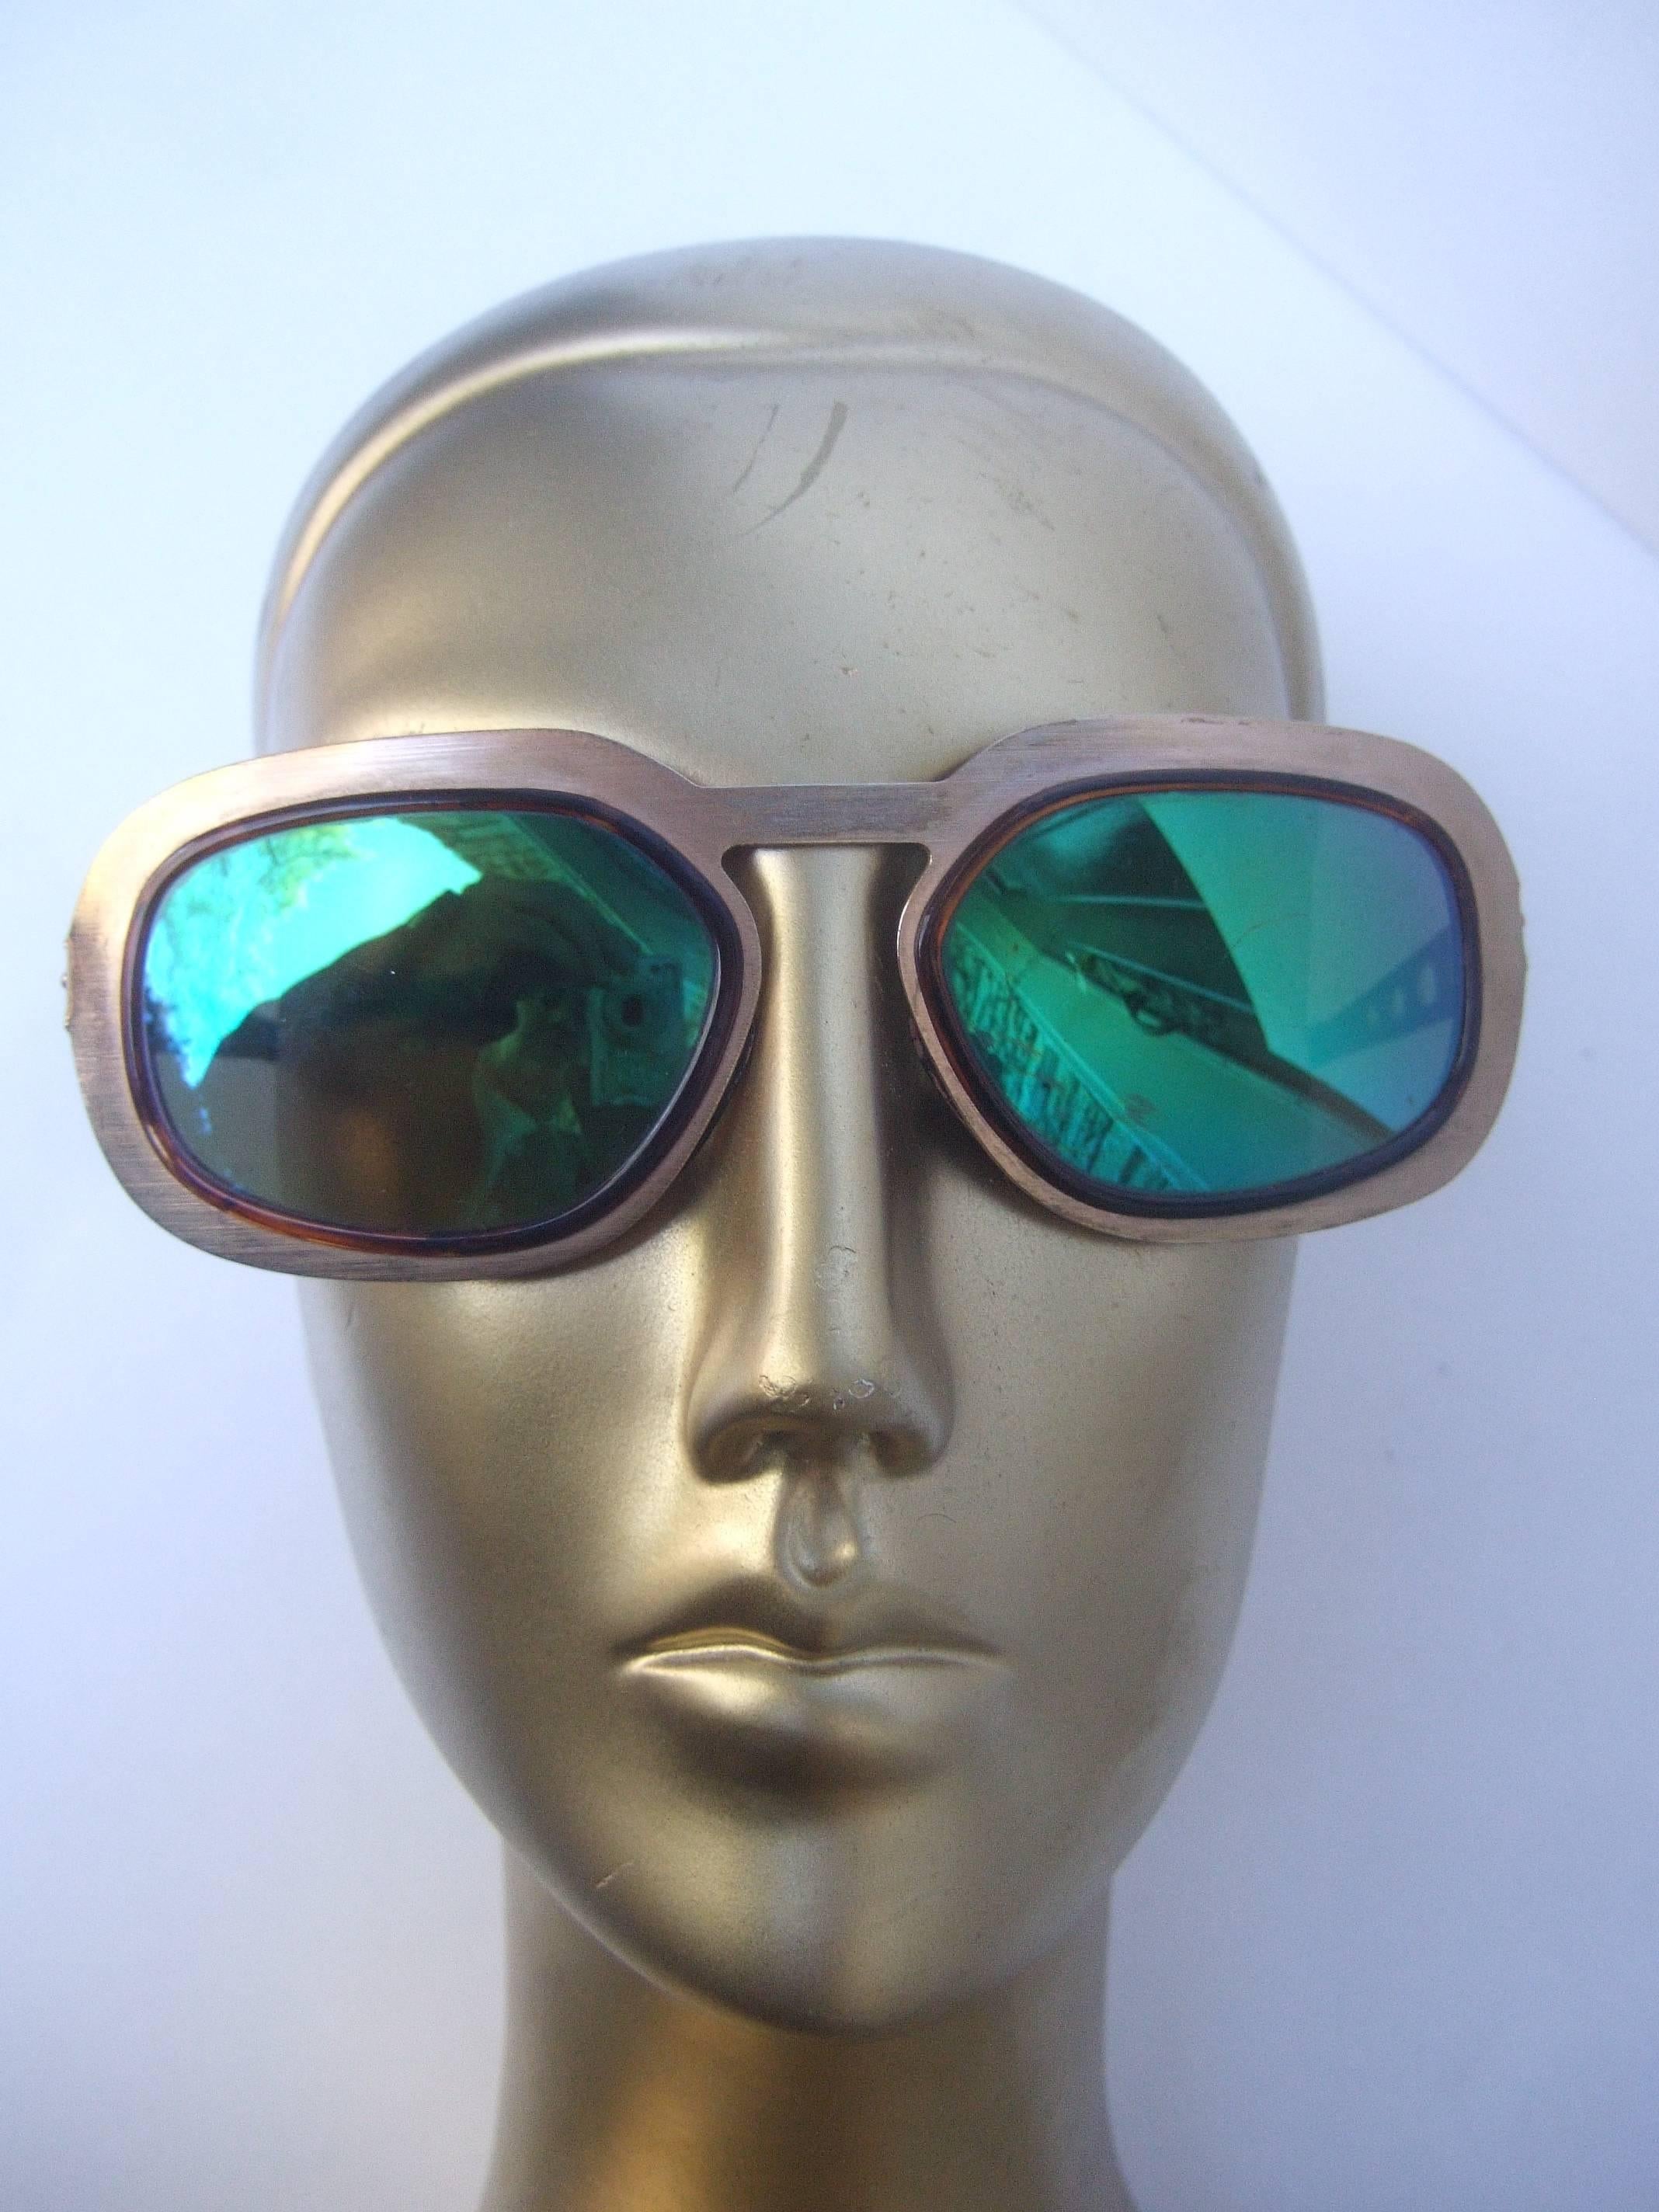 Schlanke Sonnenbrille aus vergoldetem Metall, grün getönt, Made in Italy 1970er Jahre 
Die modische Retro-Sonnenbrille ist mit gebürsteten
vergoldete Metallrahmen. Die Kunststoffgläser haben eine grüne 
reflektierende getönte Beschichtung 

Die